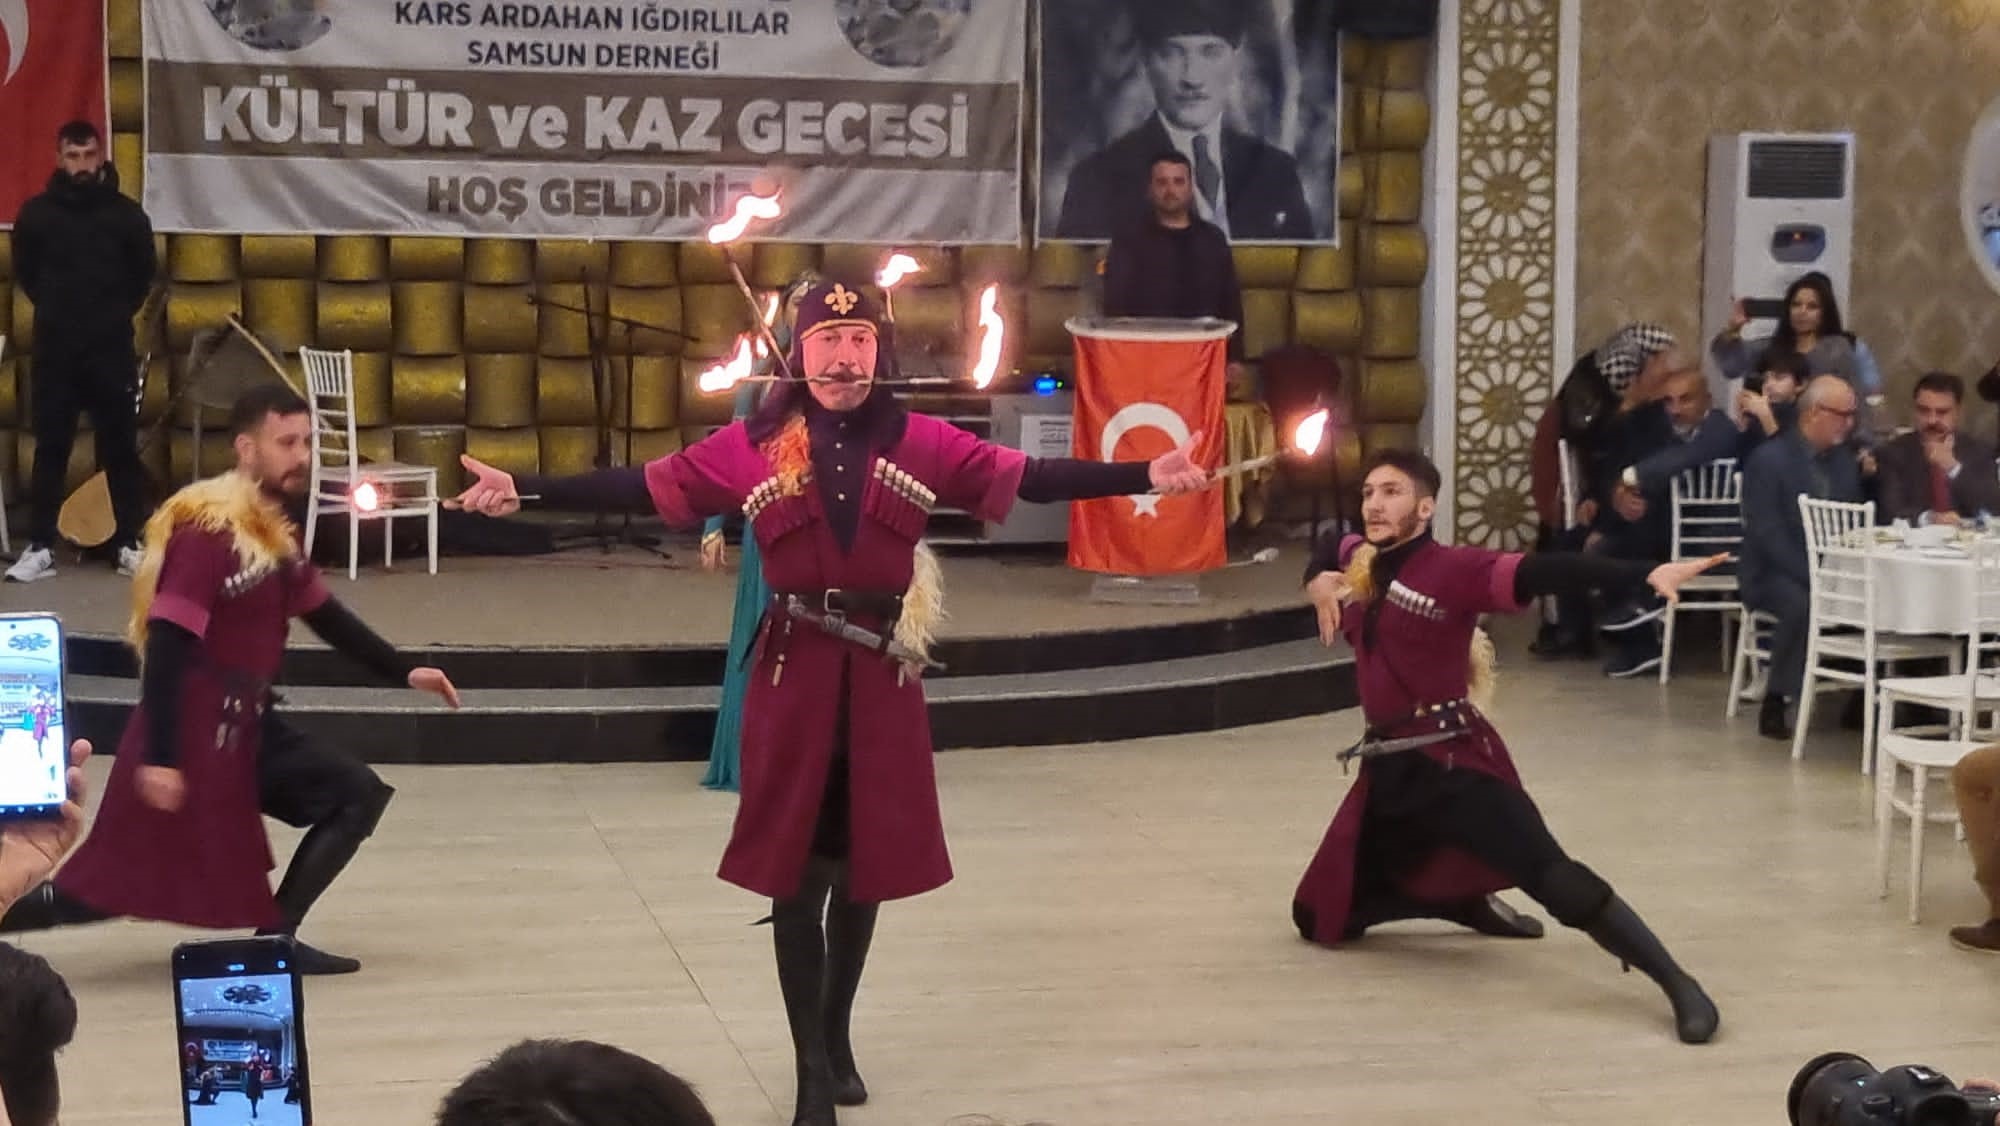 Samsun’da Kars, Ardahan, Iğdırlılar Derneği’nden Kültür Ve Kaz Gecesi Programı (2)